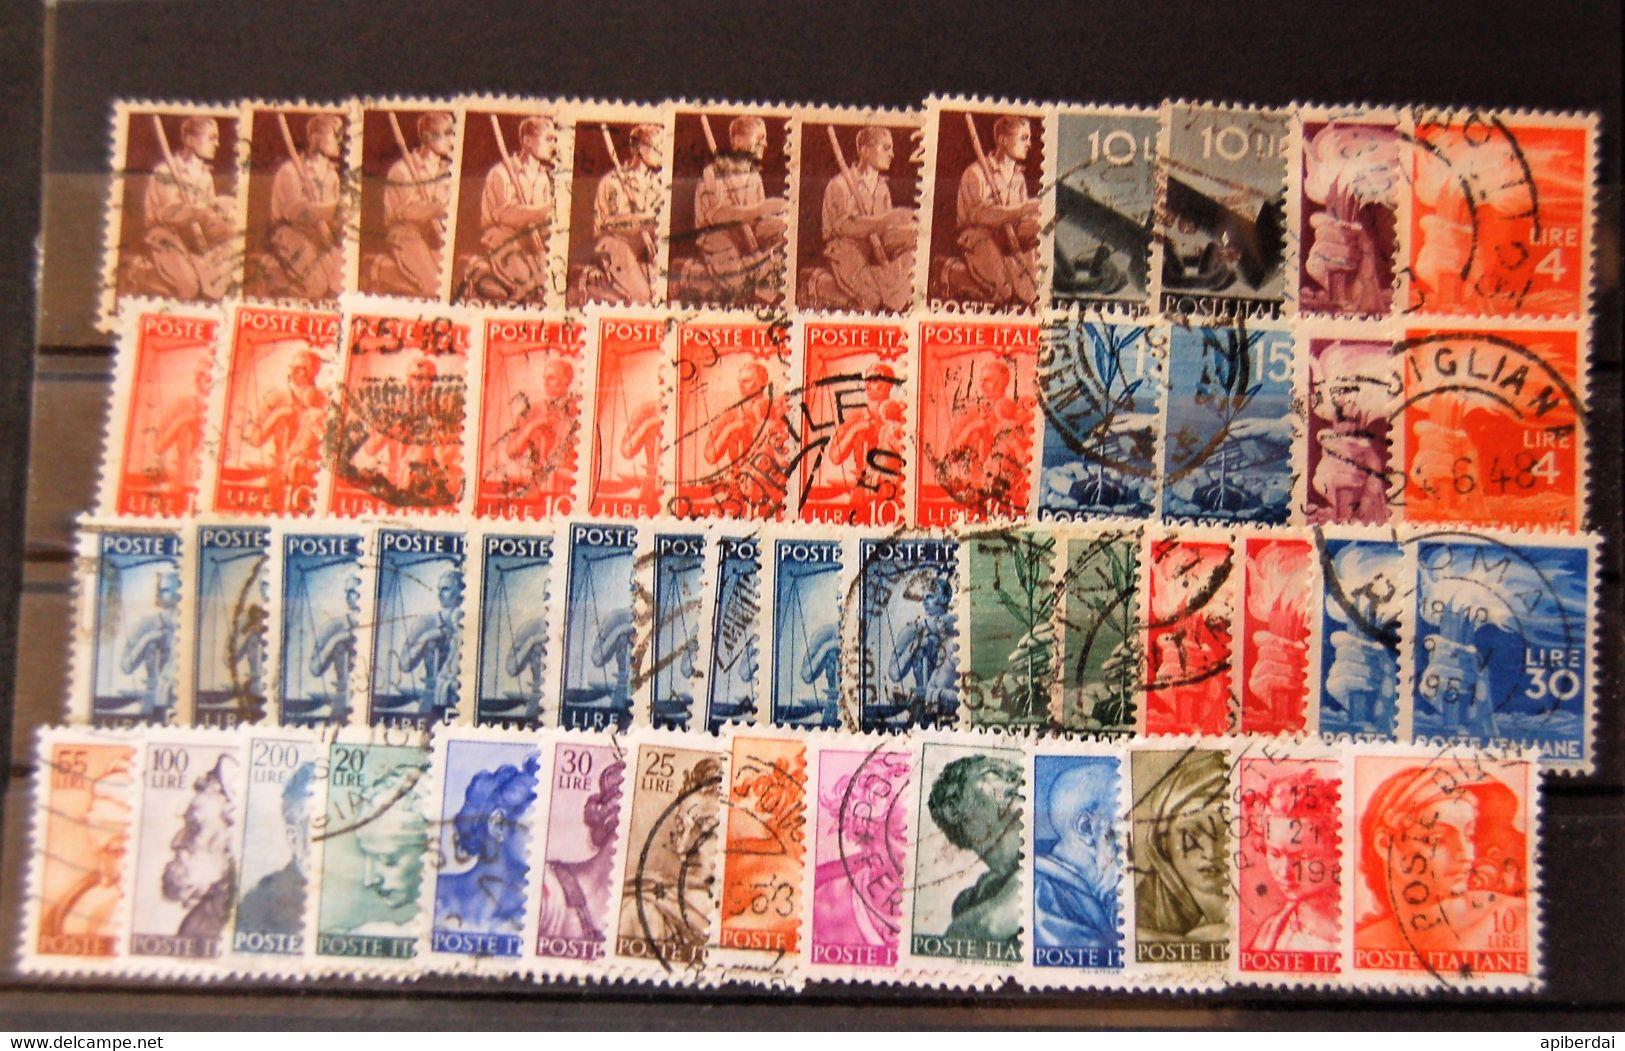 Italie Italia - Accumulation Of 146 Stamps Used - Used